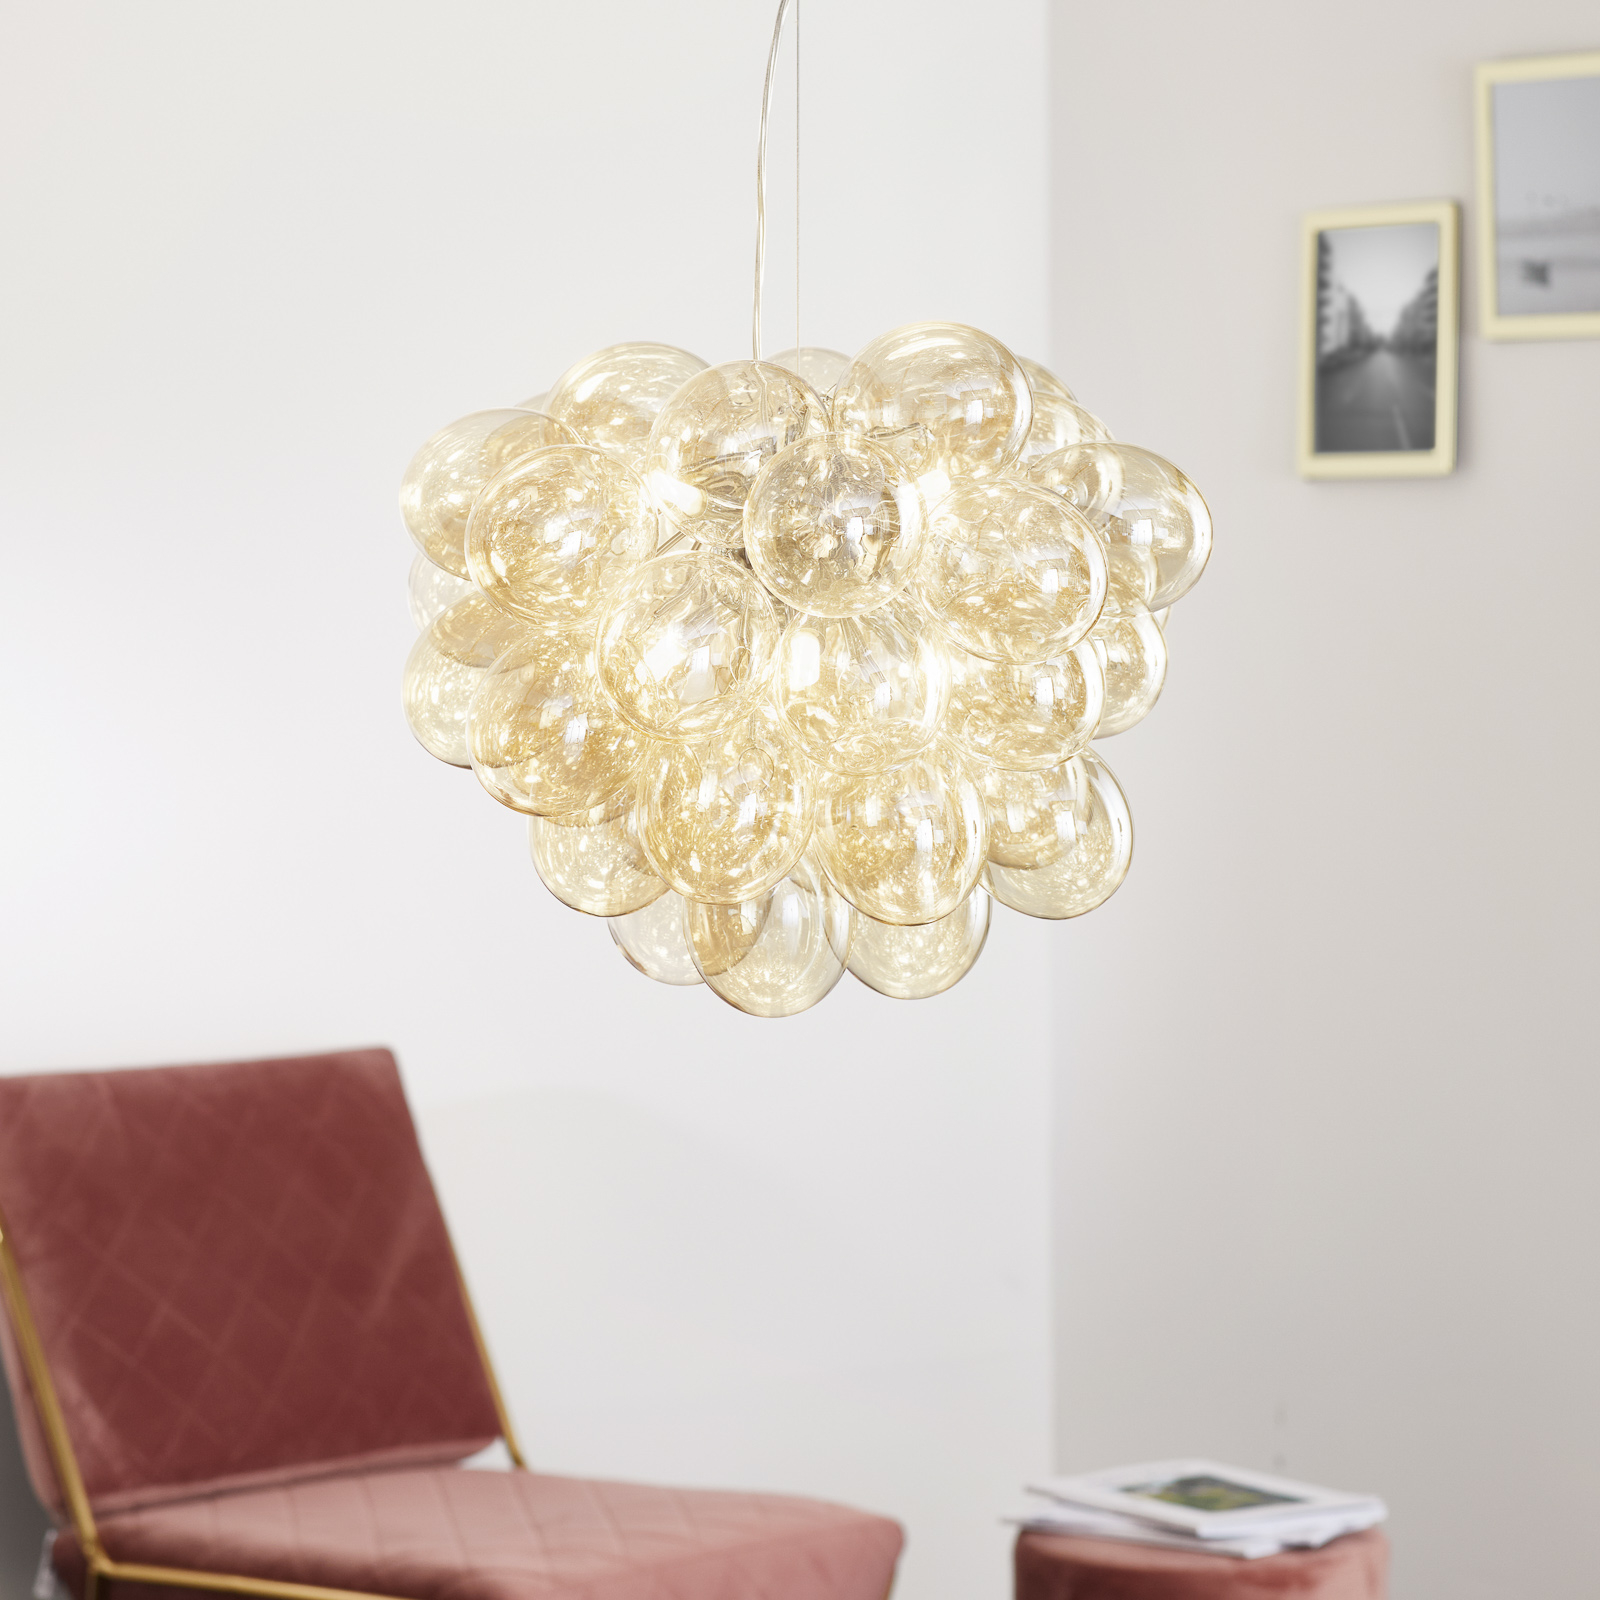 Lampa wisząca By Rydéns Gross, 50 cm, bursztynowa